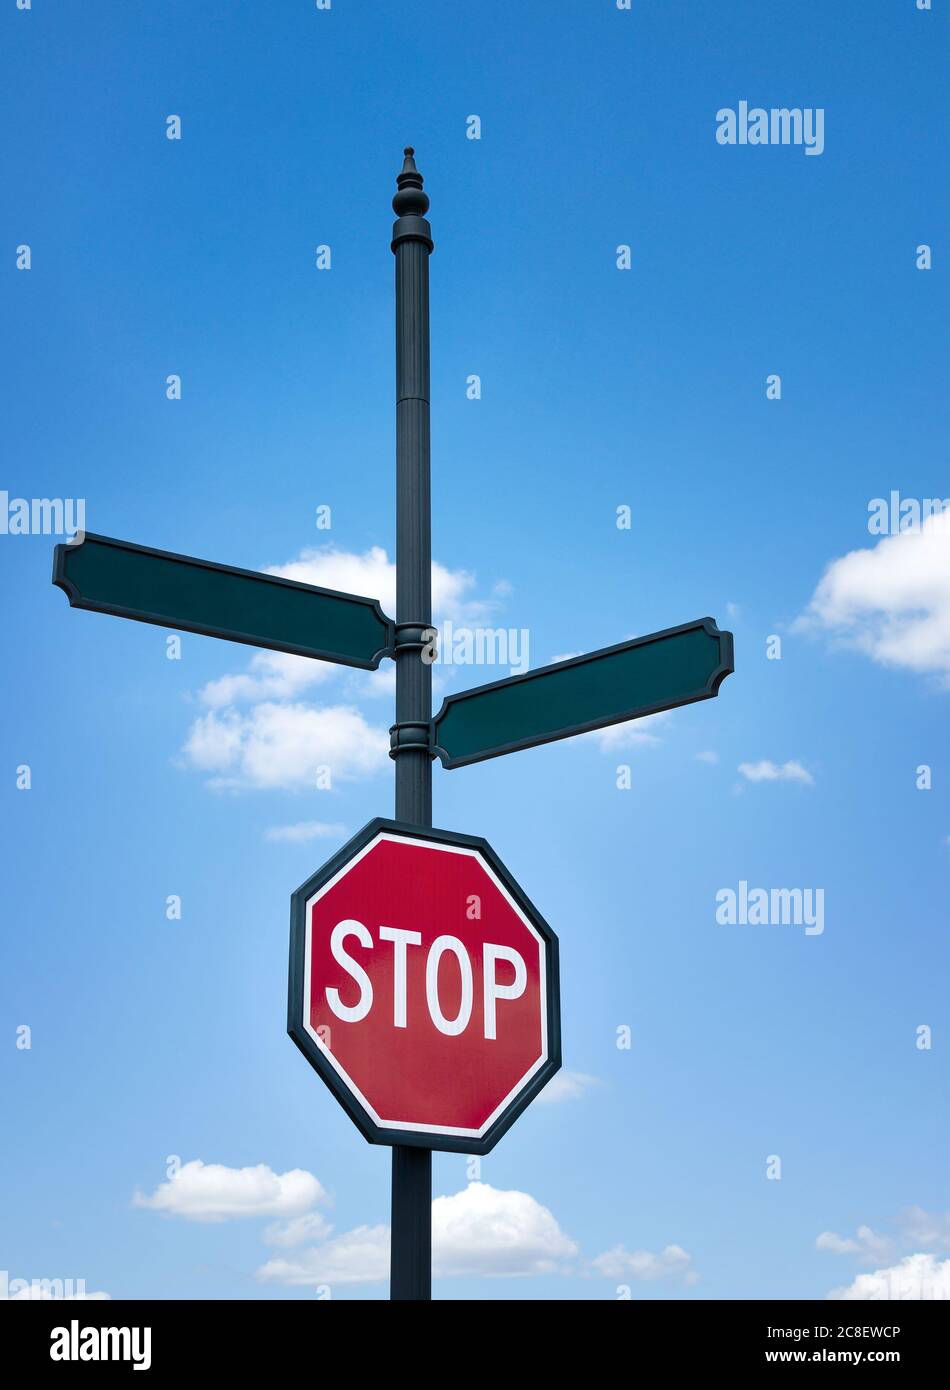 Ein Stoppschild und leere Straßenschilder gegen blauen Himmel und weiße Wolken. Platz für Ihren benutzerdefinierten Text. Konzept für die Entscheidungsfindung, zwei Alternativen. Stockfoto